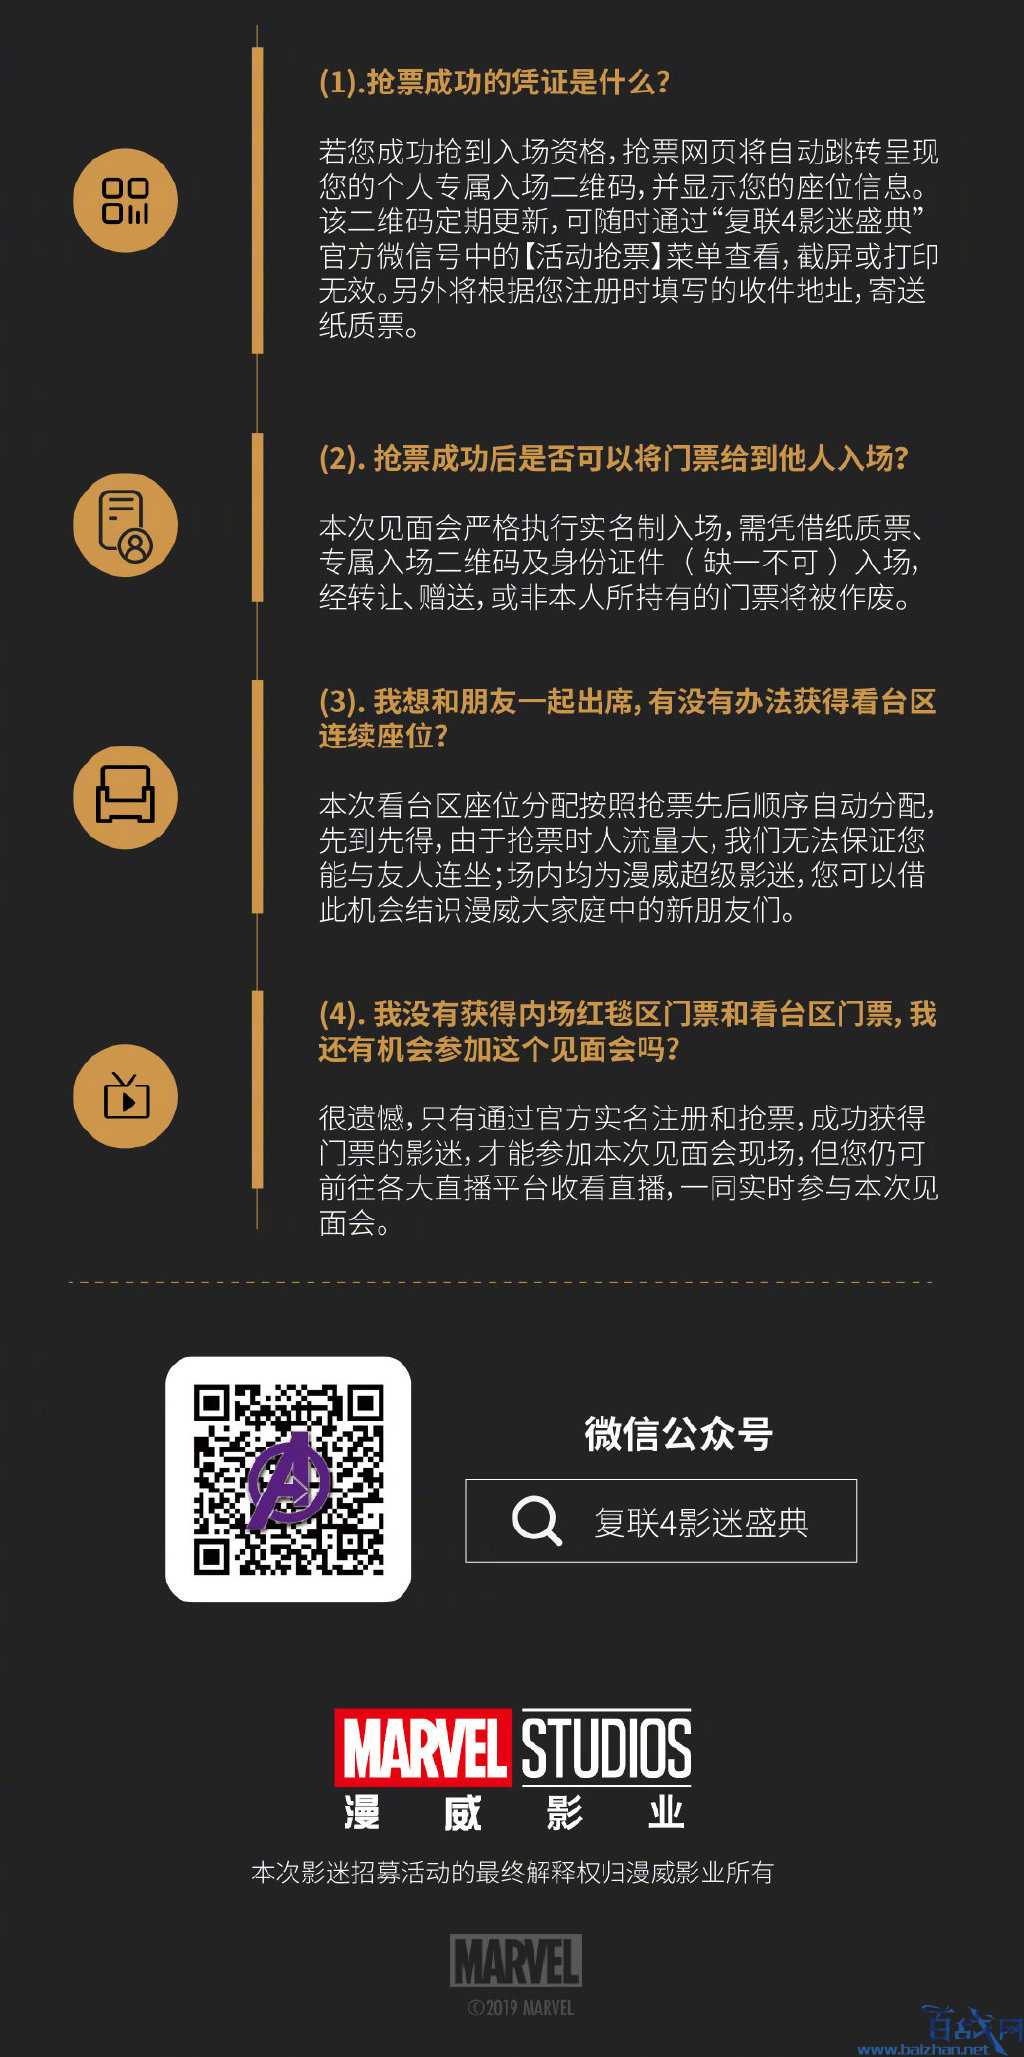 复联4中国首映礼4月18上海举行,粉丝可抢票免